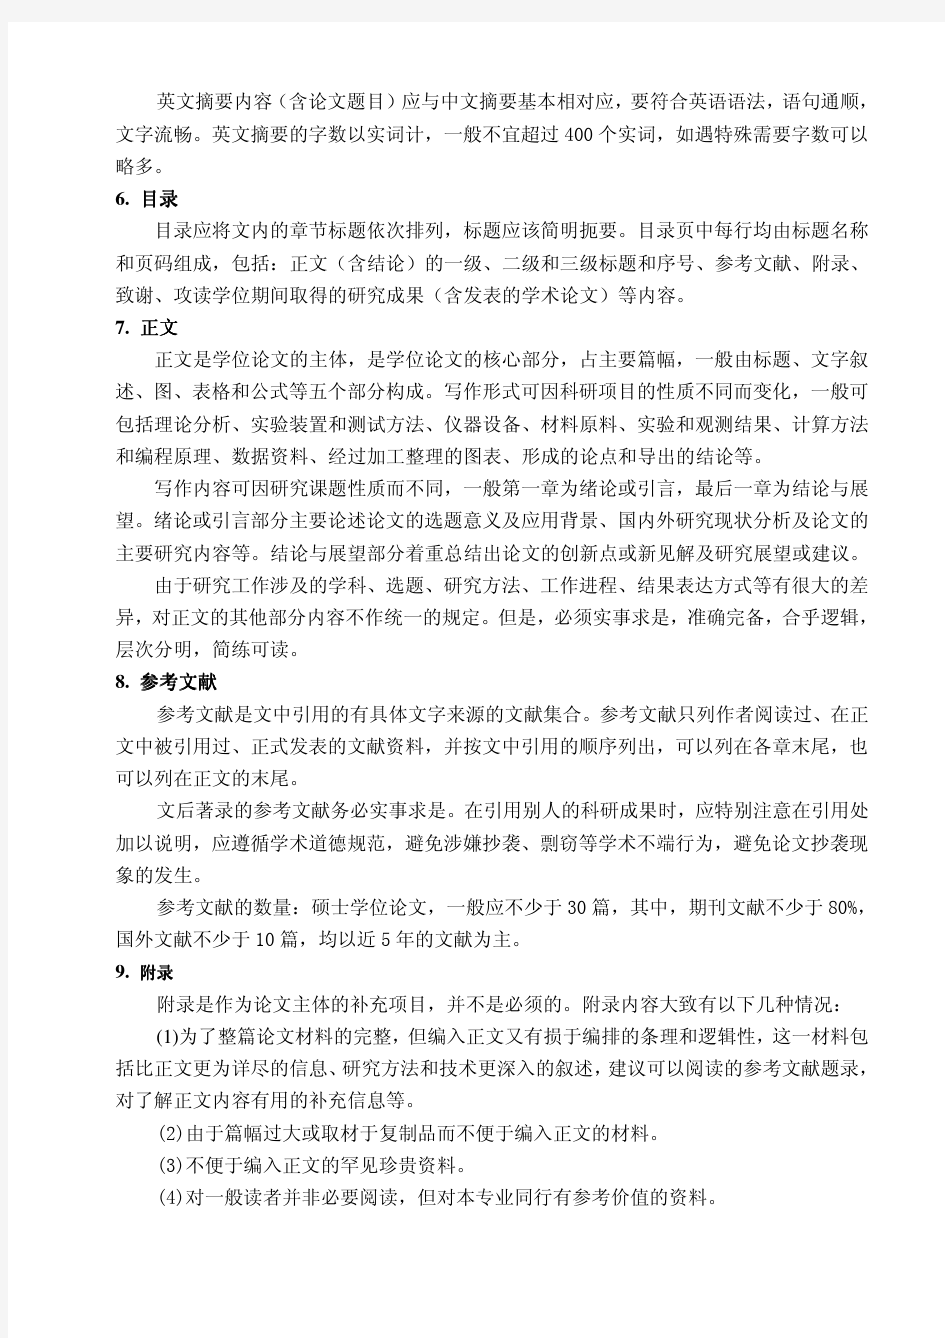 上海电力学院研究生学位论文写作规范